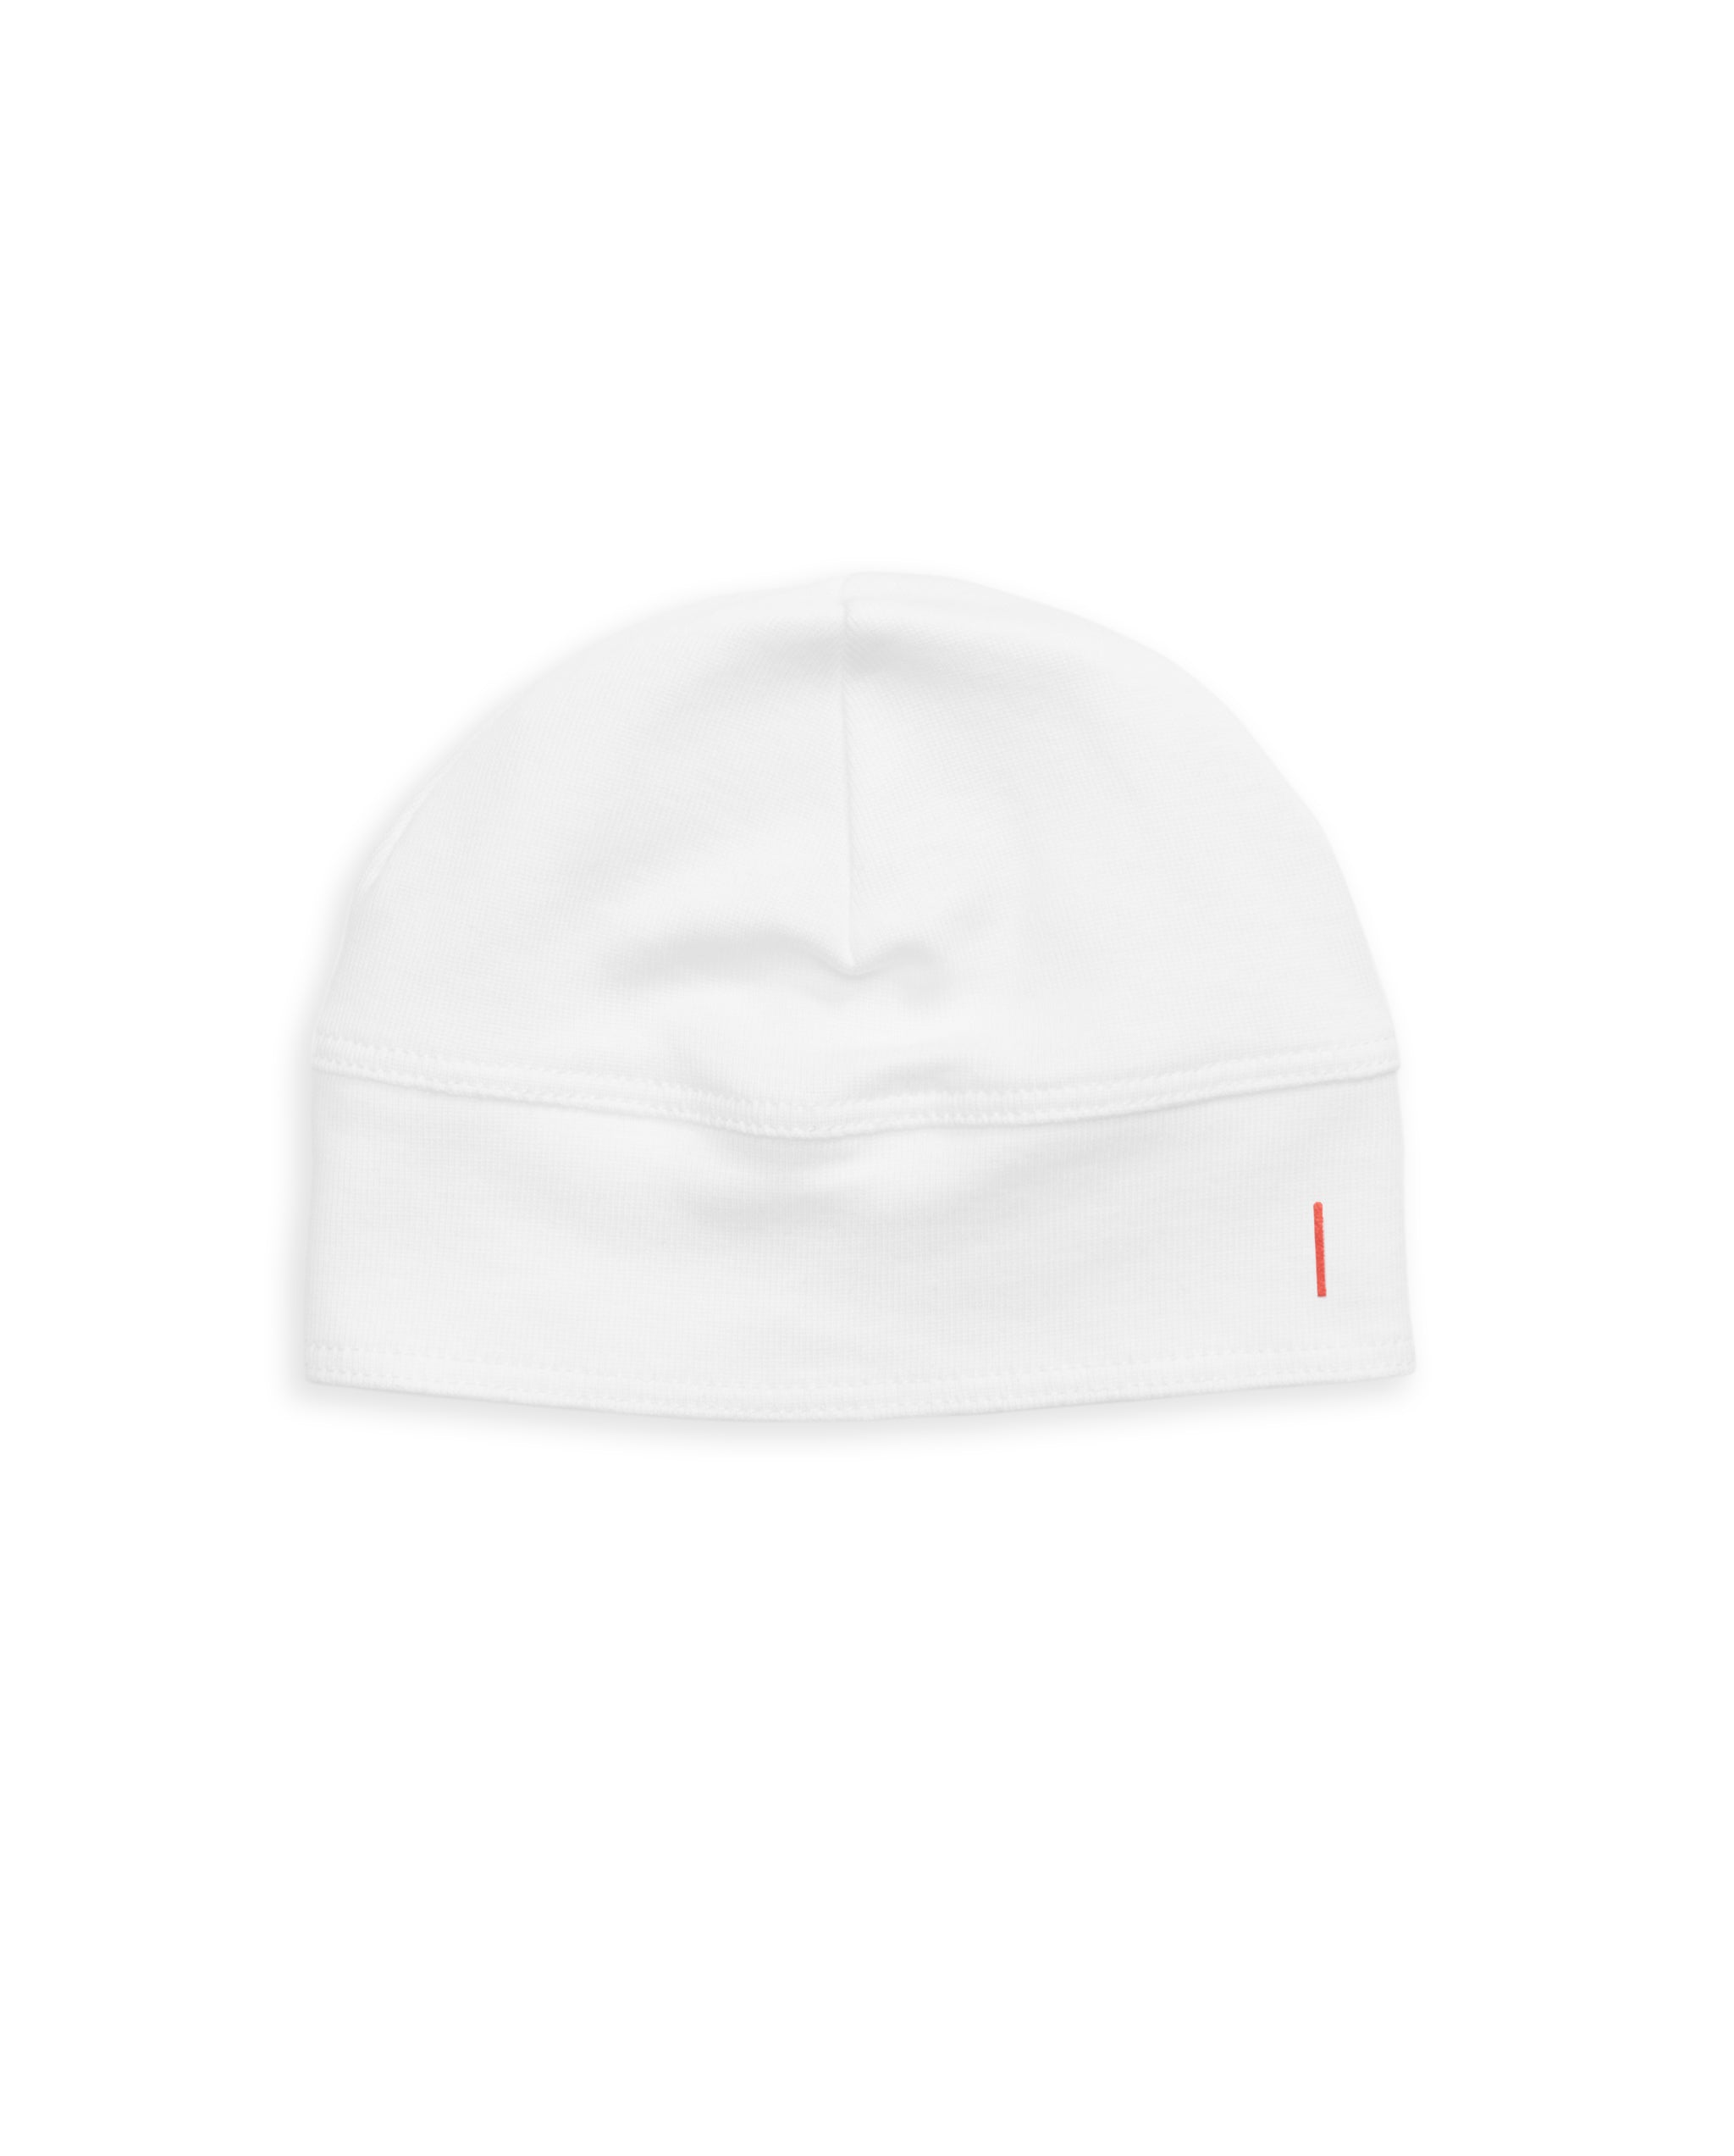 The Organic Baby Hat [White]